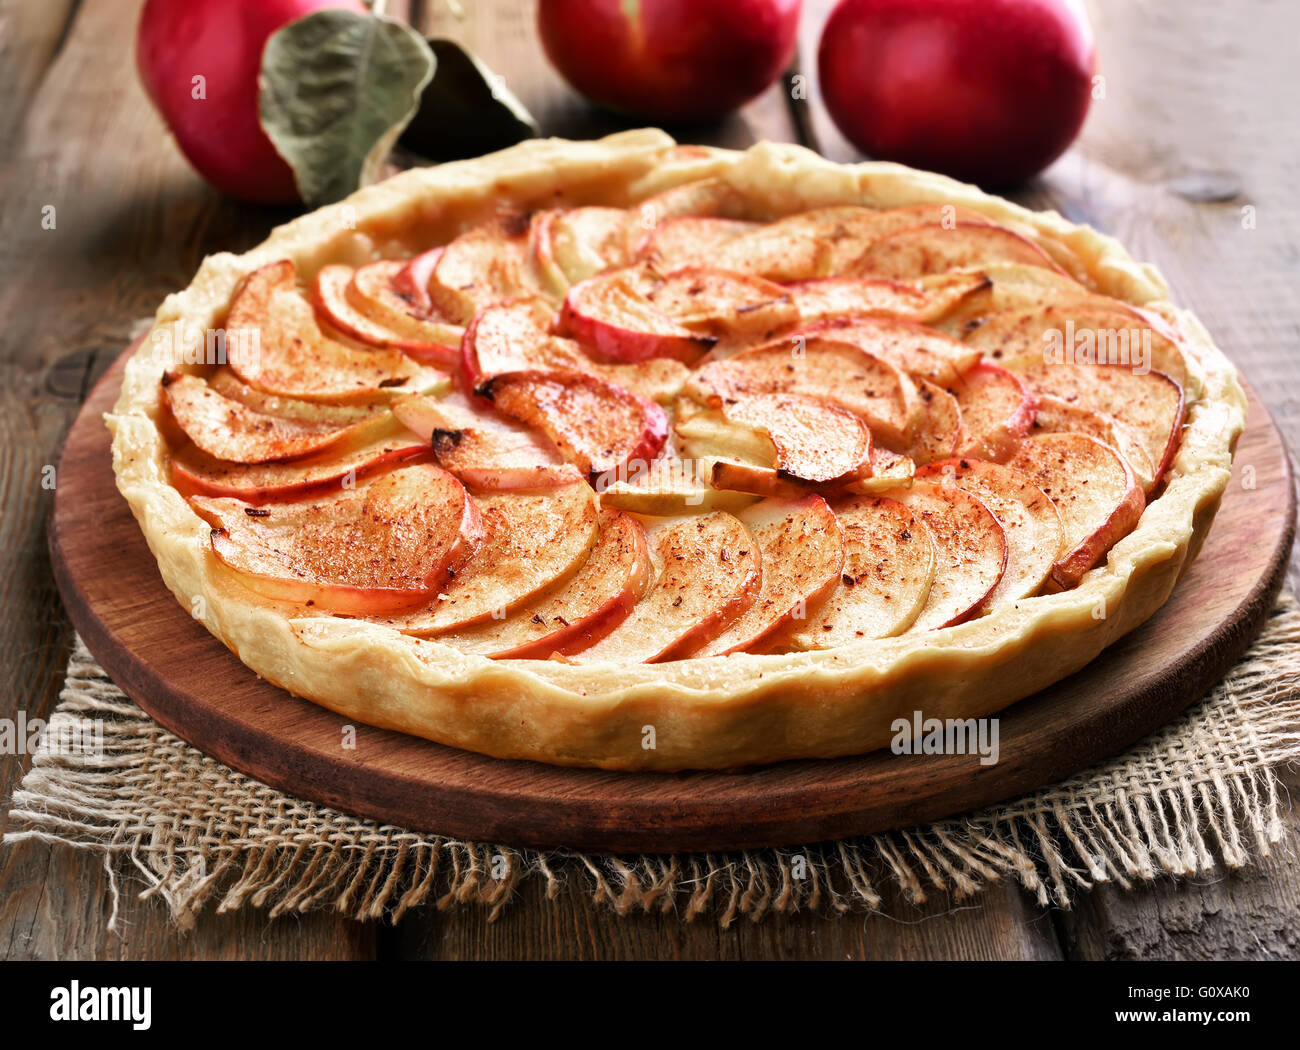 Fruit baking apple pie on wooden table Stock Photo